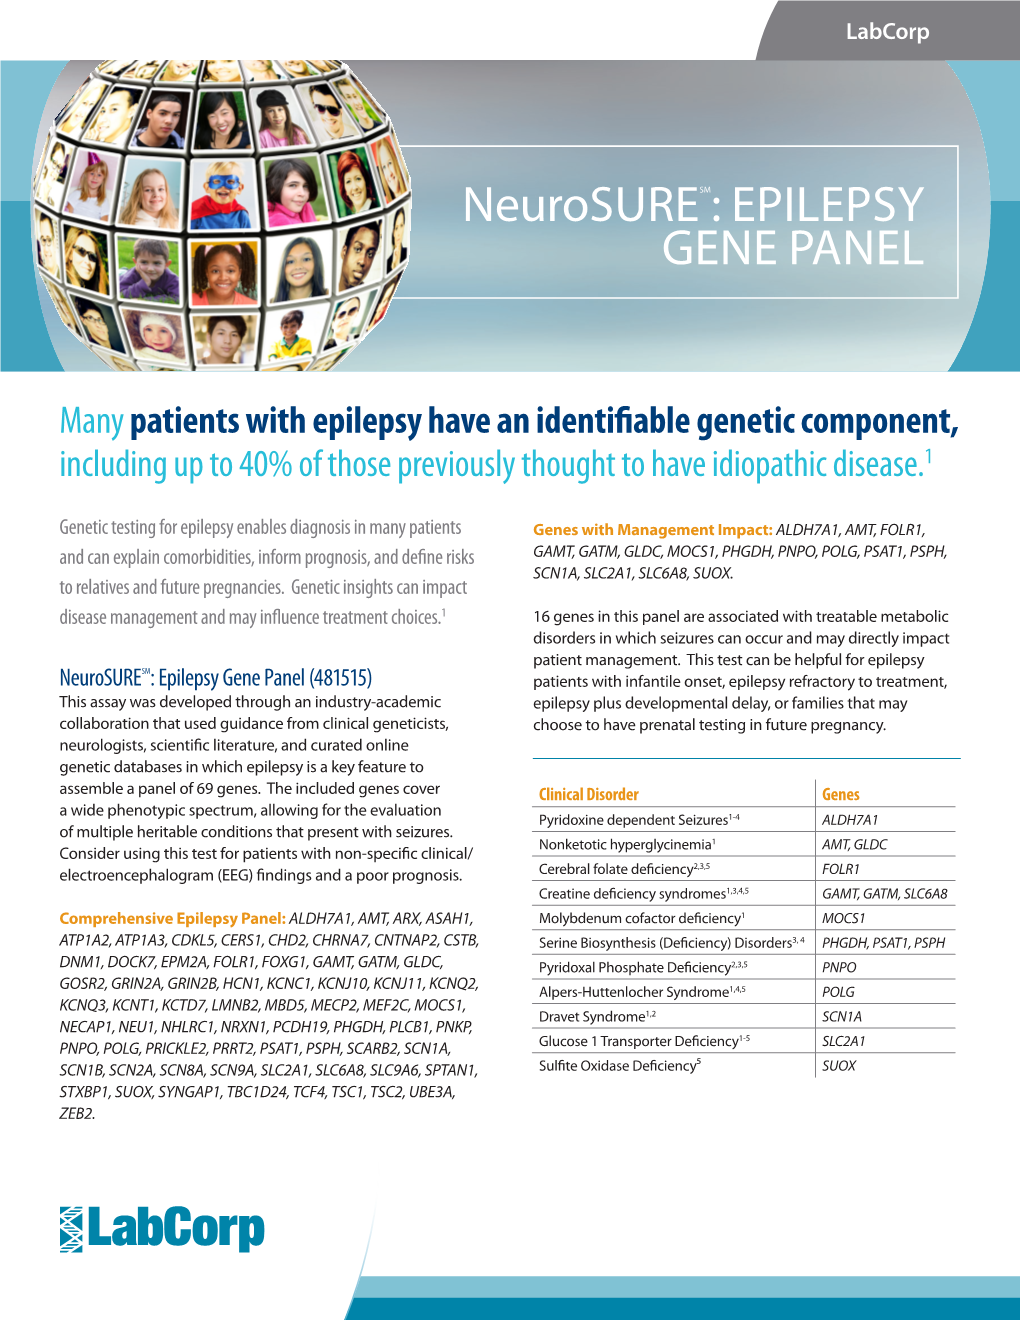 Epilepsy Gene Panel